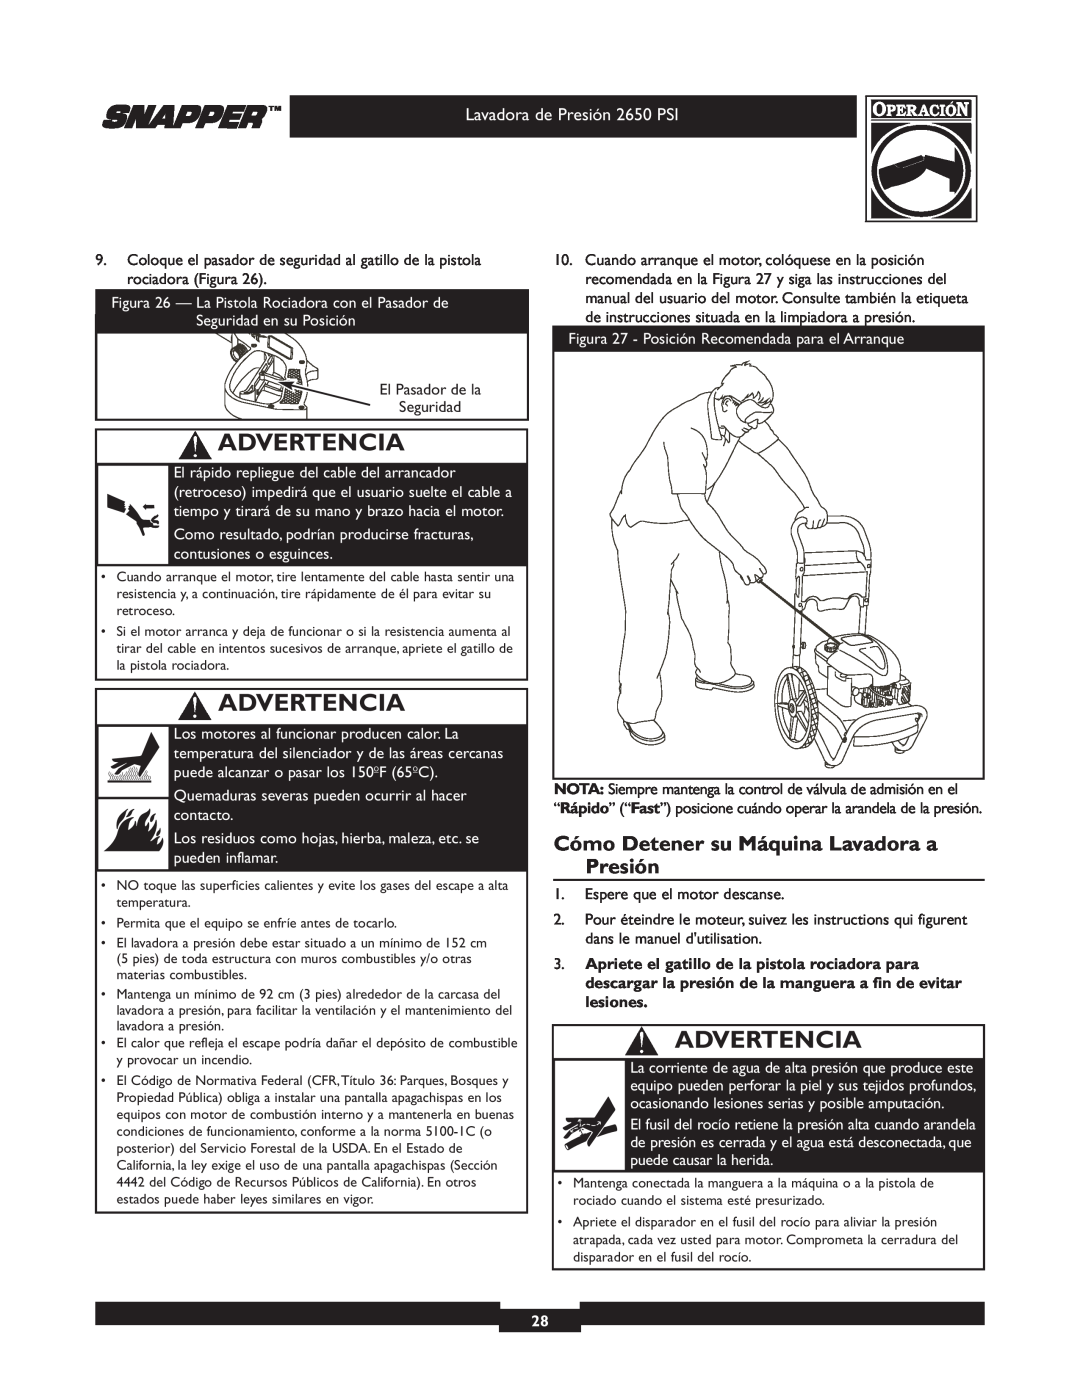 Snapper 020230 user manual Cómo Detener su Máquina Lavadora a Presión, Advertencia 